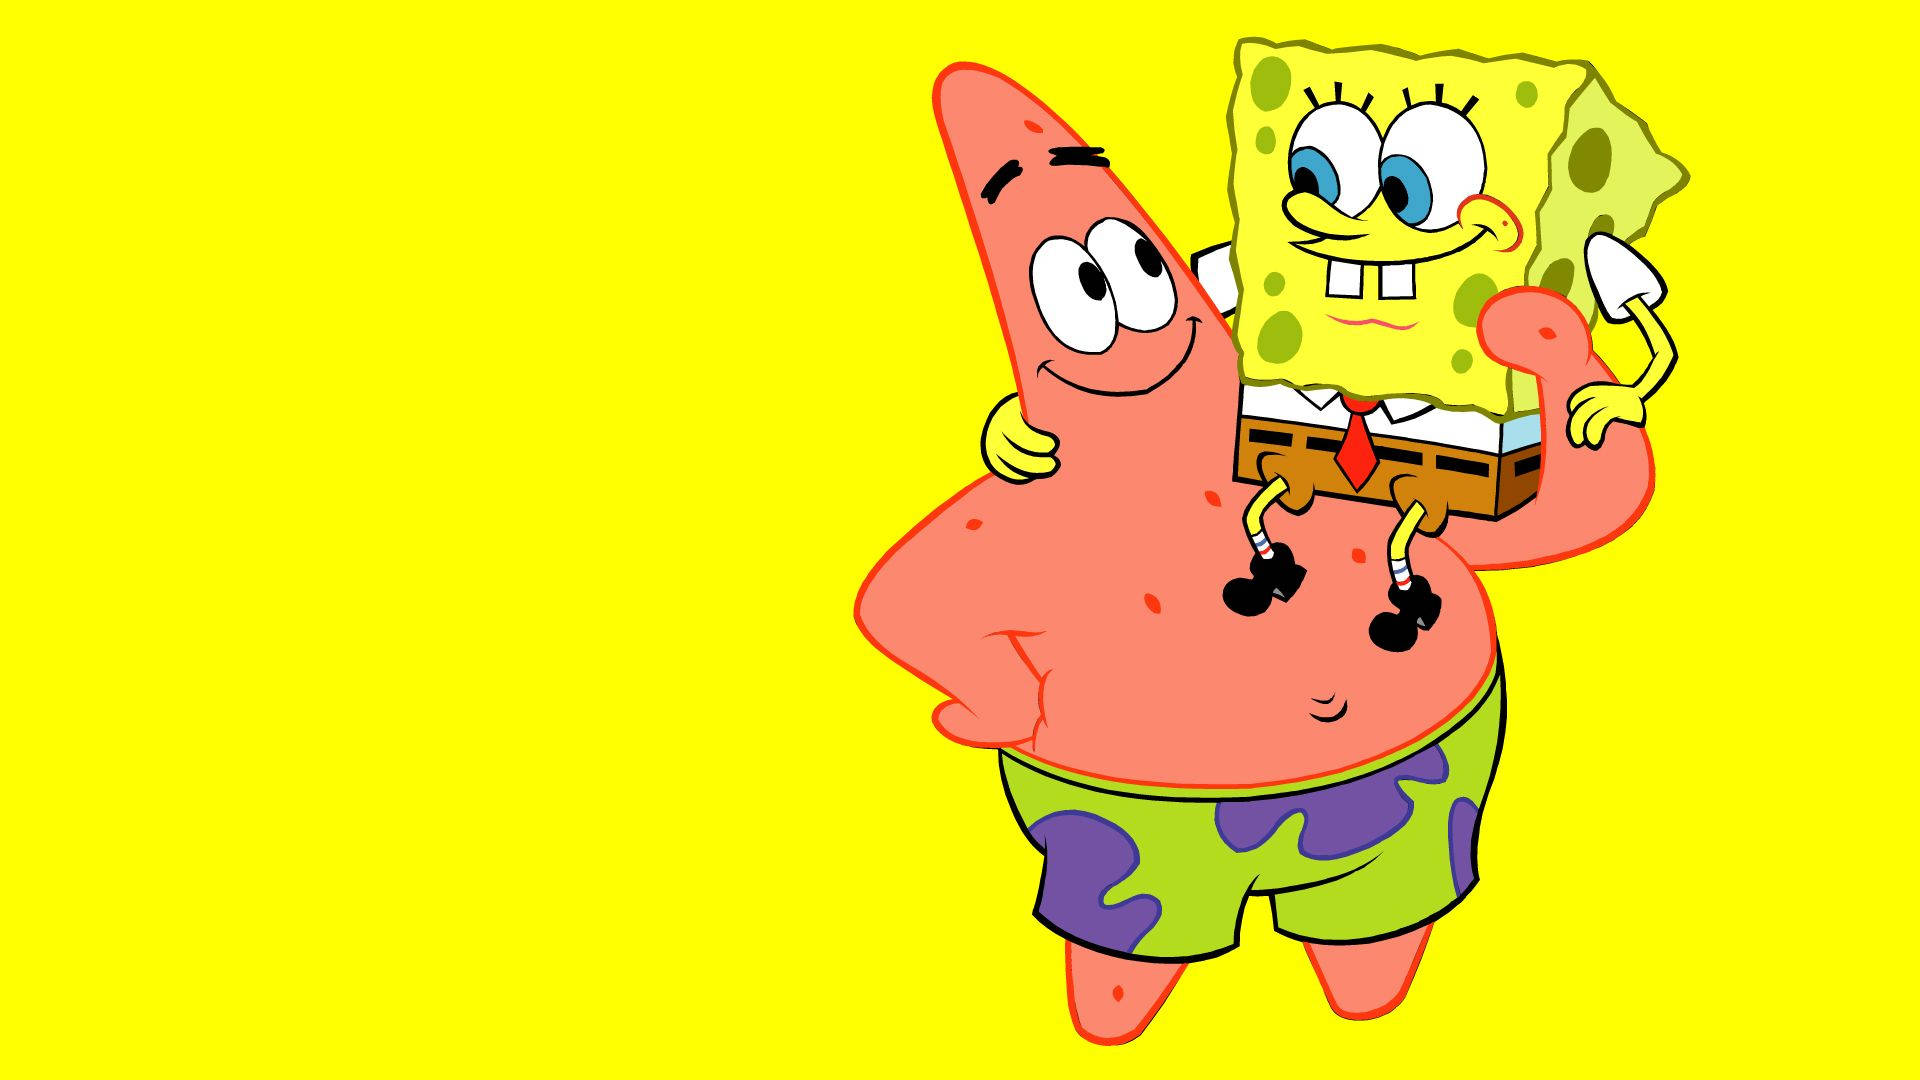 Patrick Star Carrying Cool Spongebob Squarepants